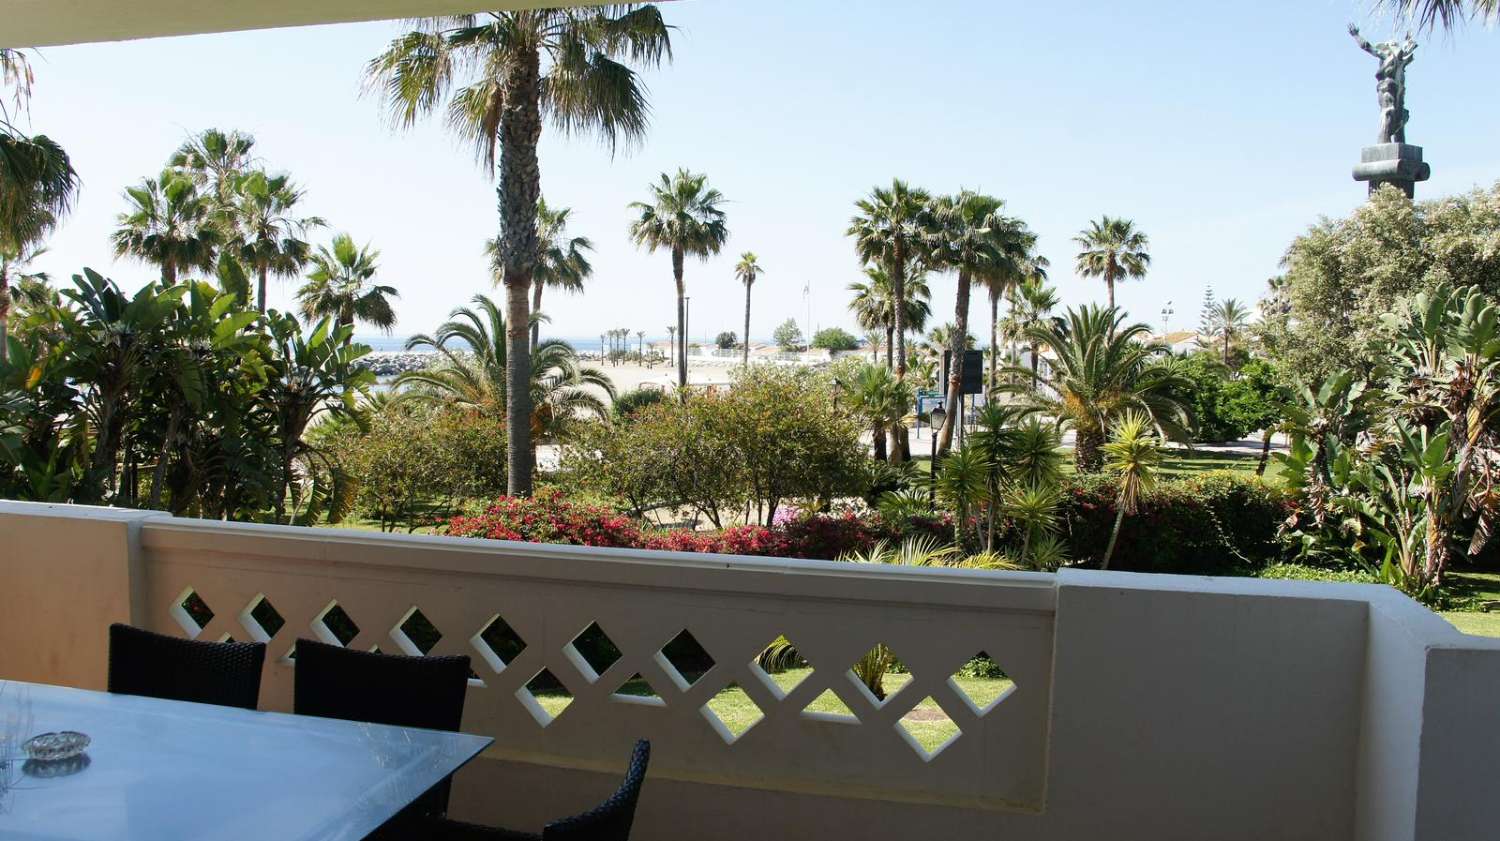 Pronájem na dovolenou. Apartmán s výhledem na moře. Puerto Banus, Marbella.